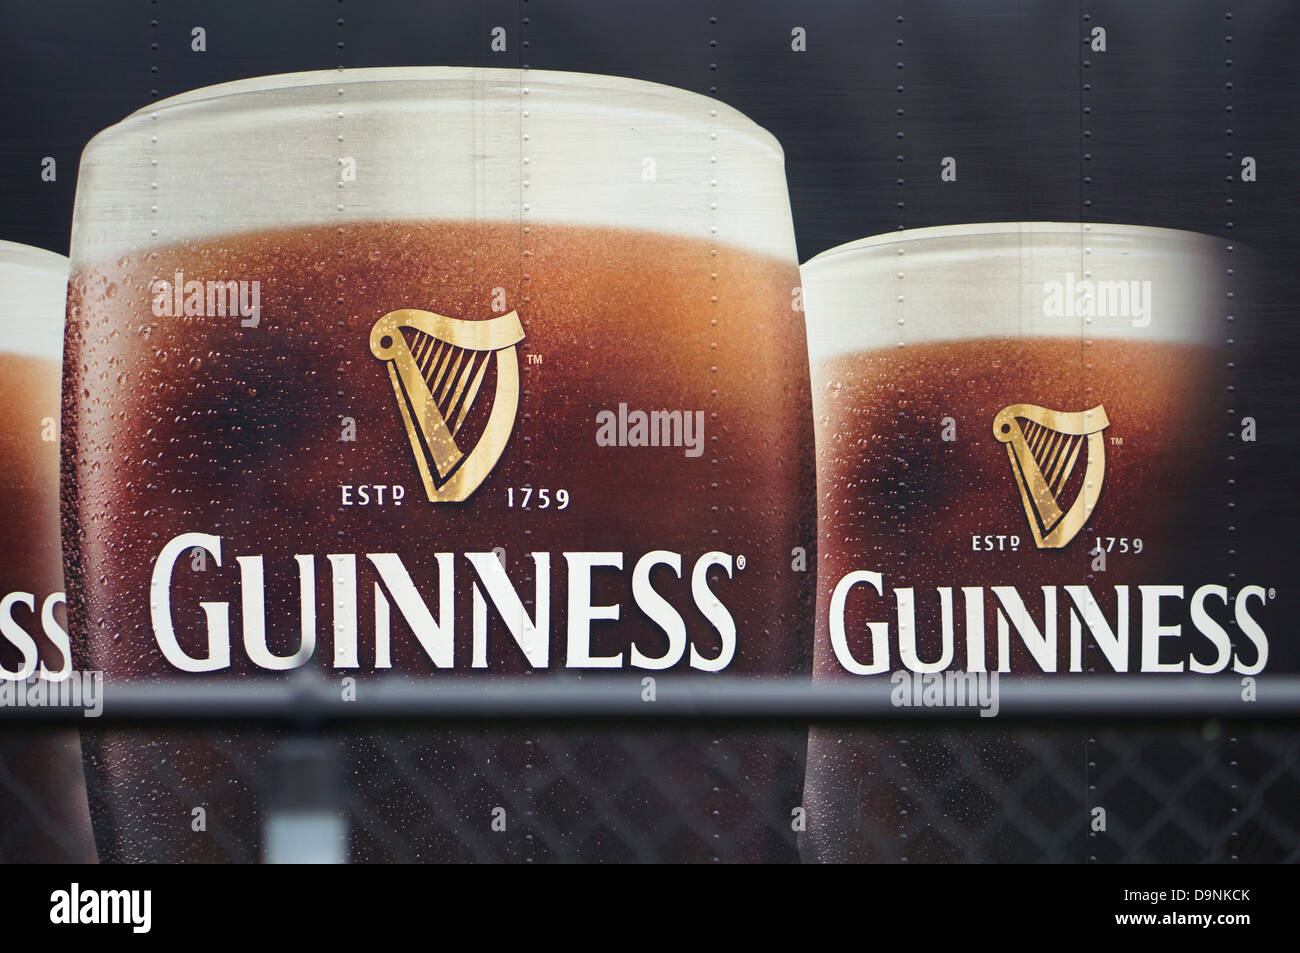 Guinness-Schilder, Werbung auf der Seite des LKW Stockfoto